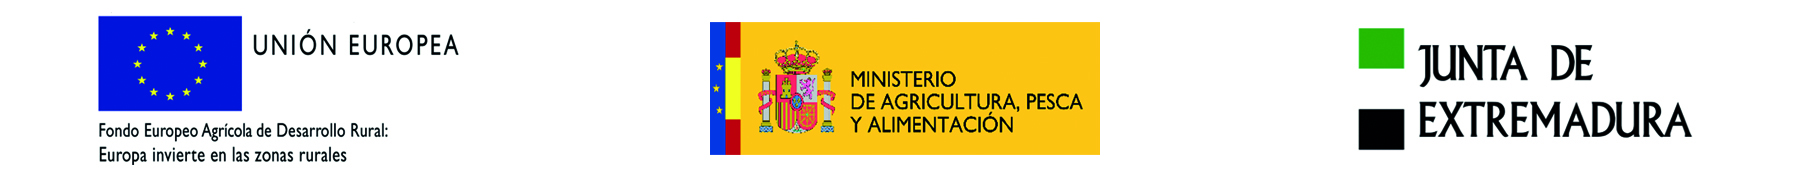 UNION EUROPEA - MINISTERIO DE AGRICULTURA, PESCA Y ALIMENTACION - JUNTA DE EXTREMADURA